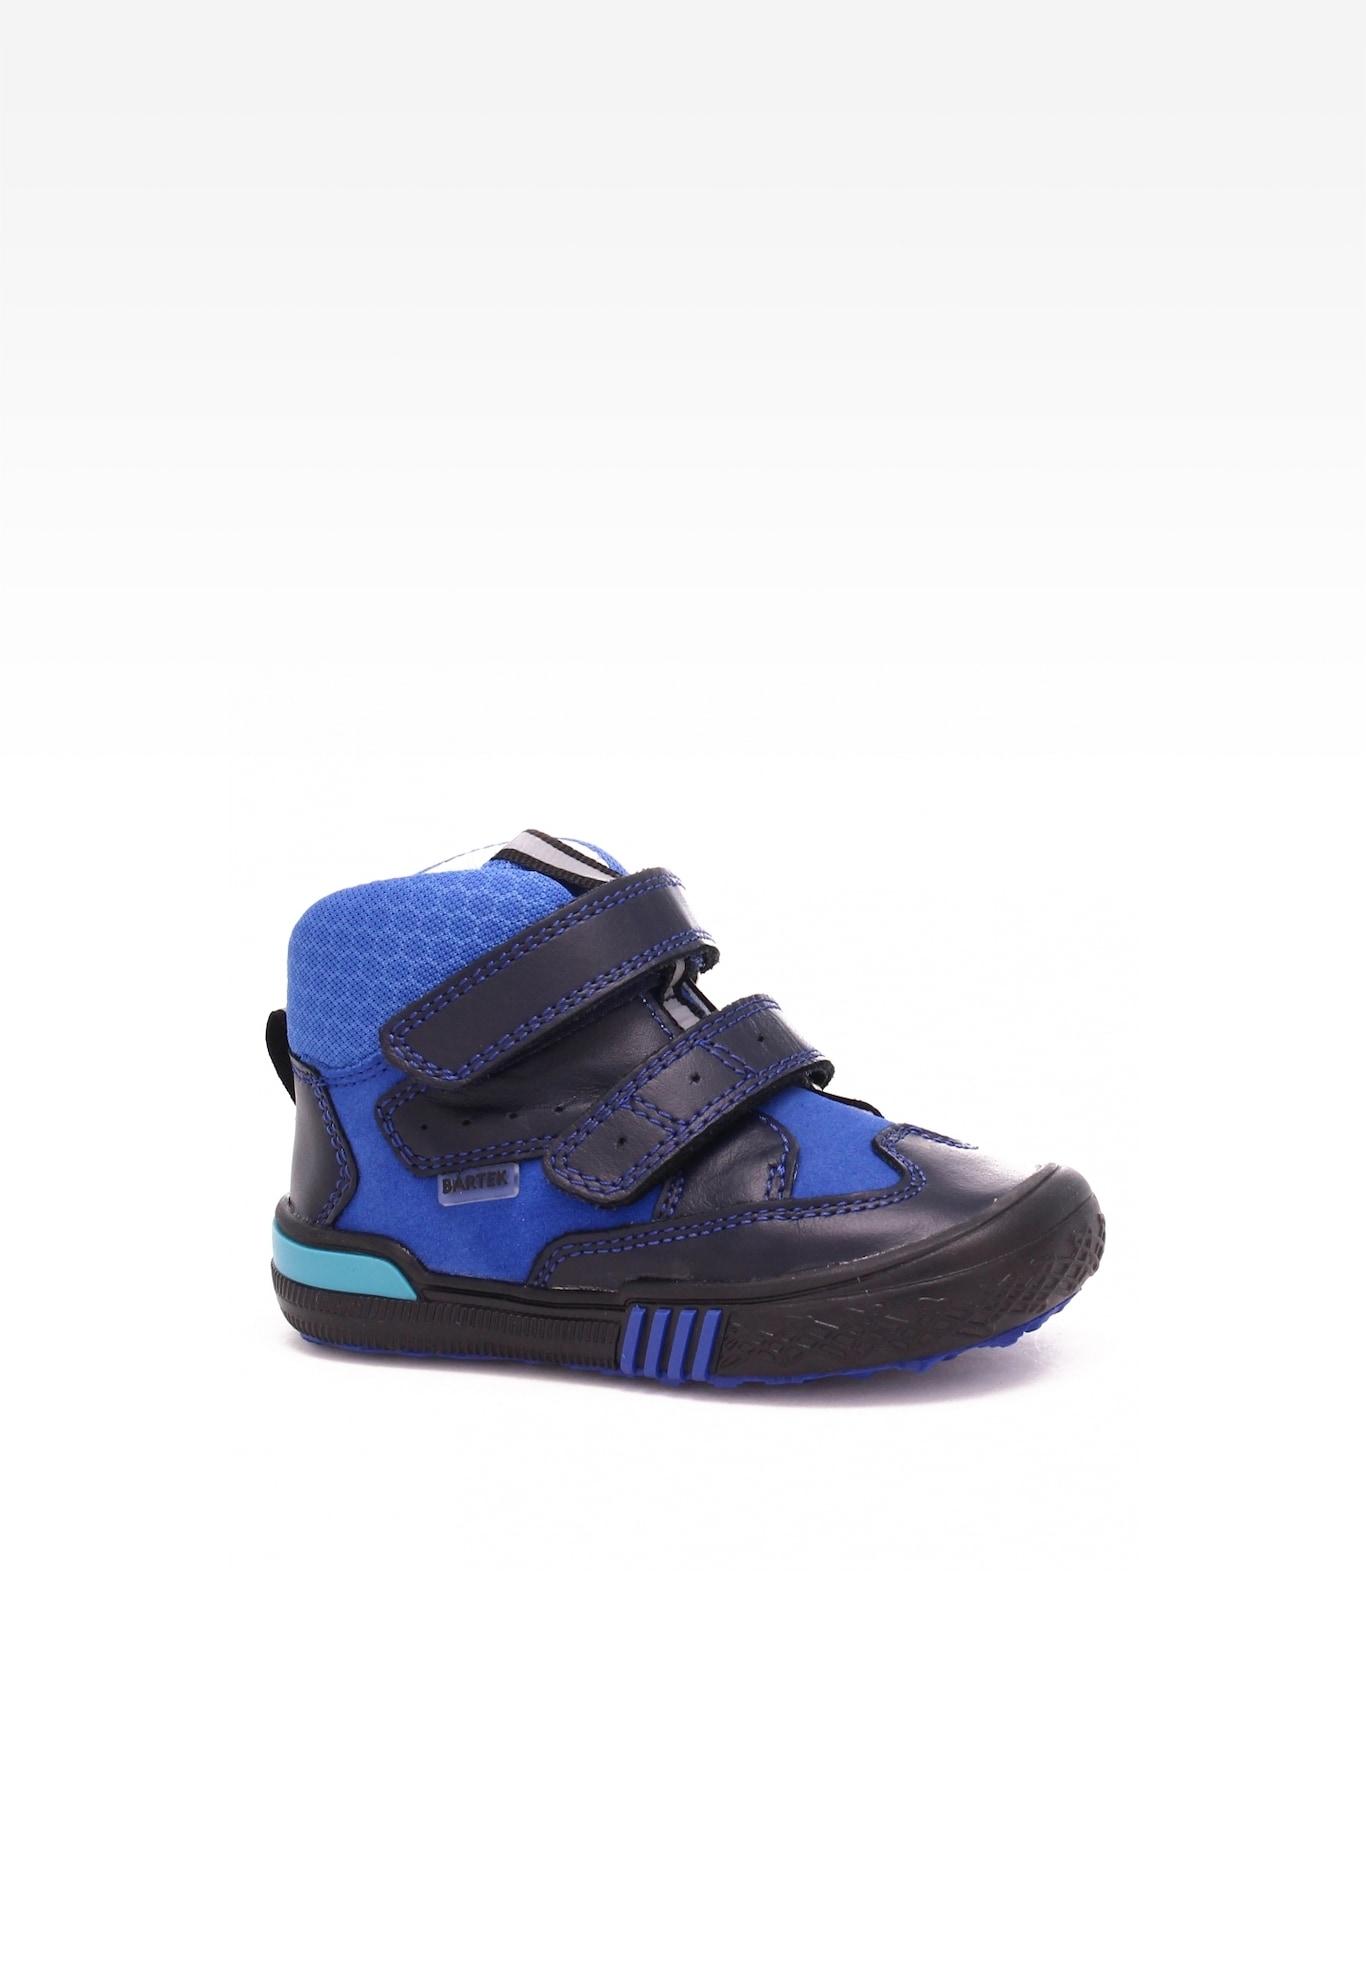 Sneakers BARTEK 21704-006, dla chłopców, granatowo-niebieski